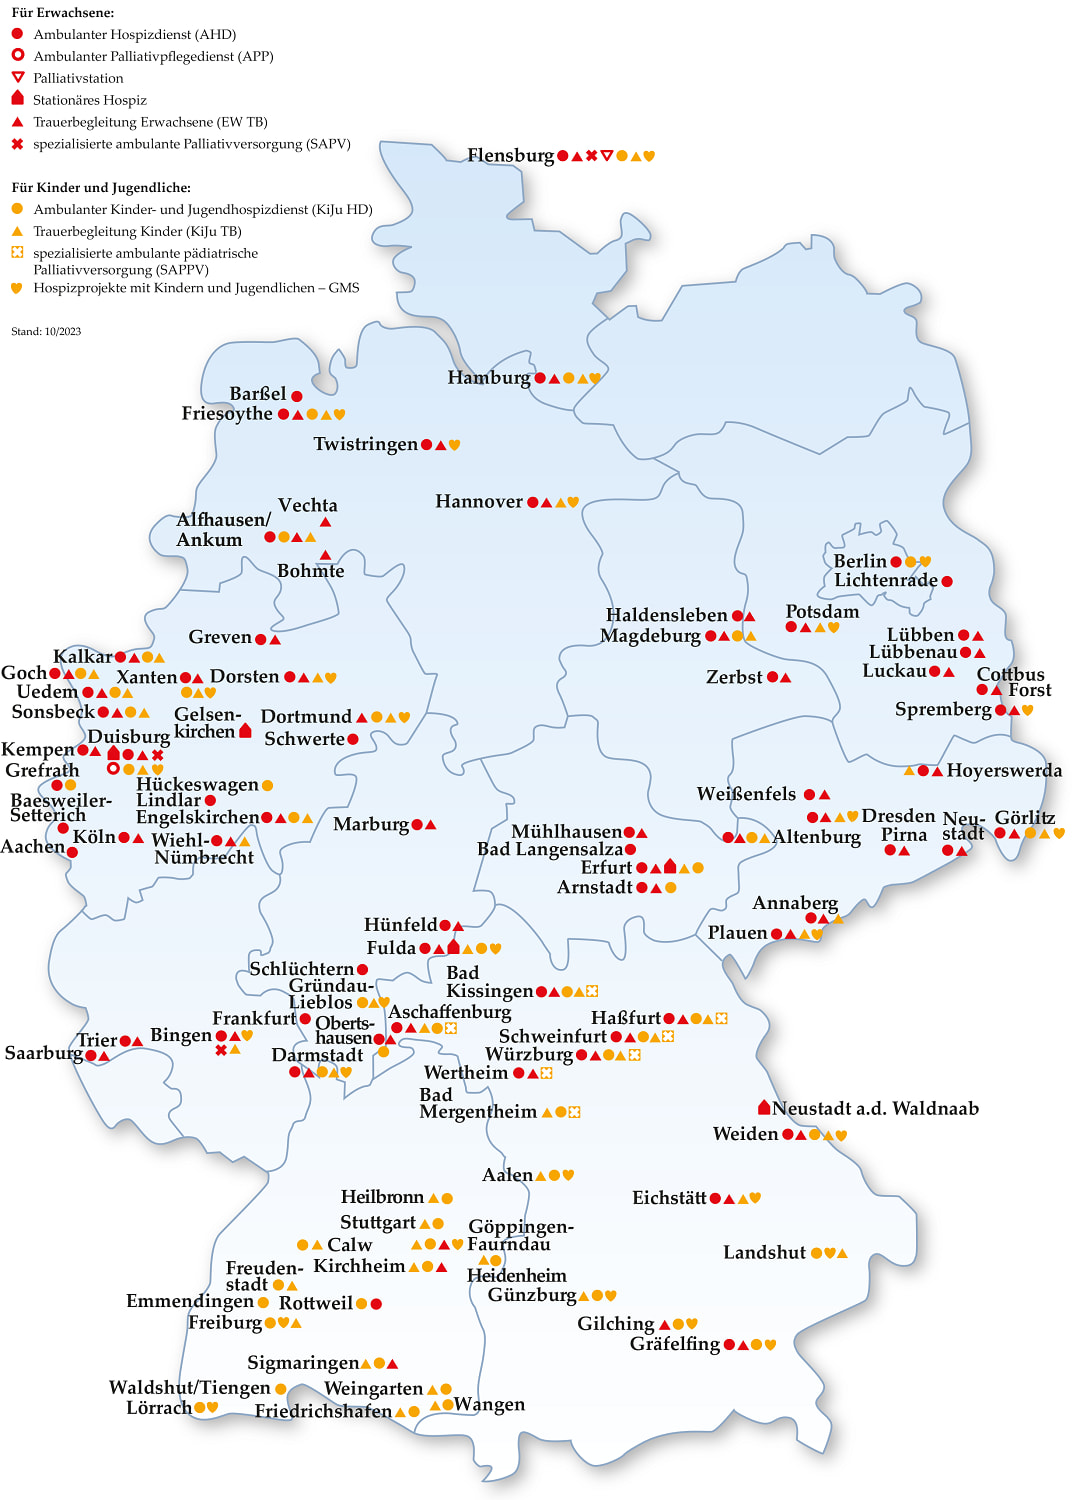 Deutschlandkarte mit den Einrichtungen und Diensten der Malteser Hospizarbeit